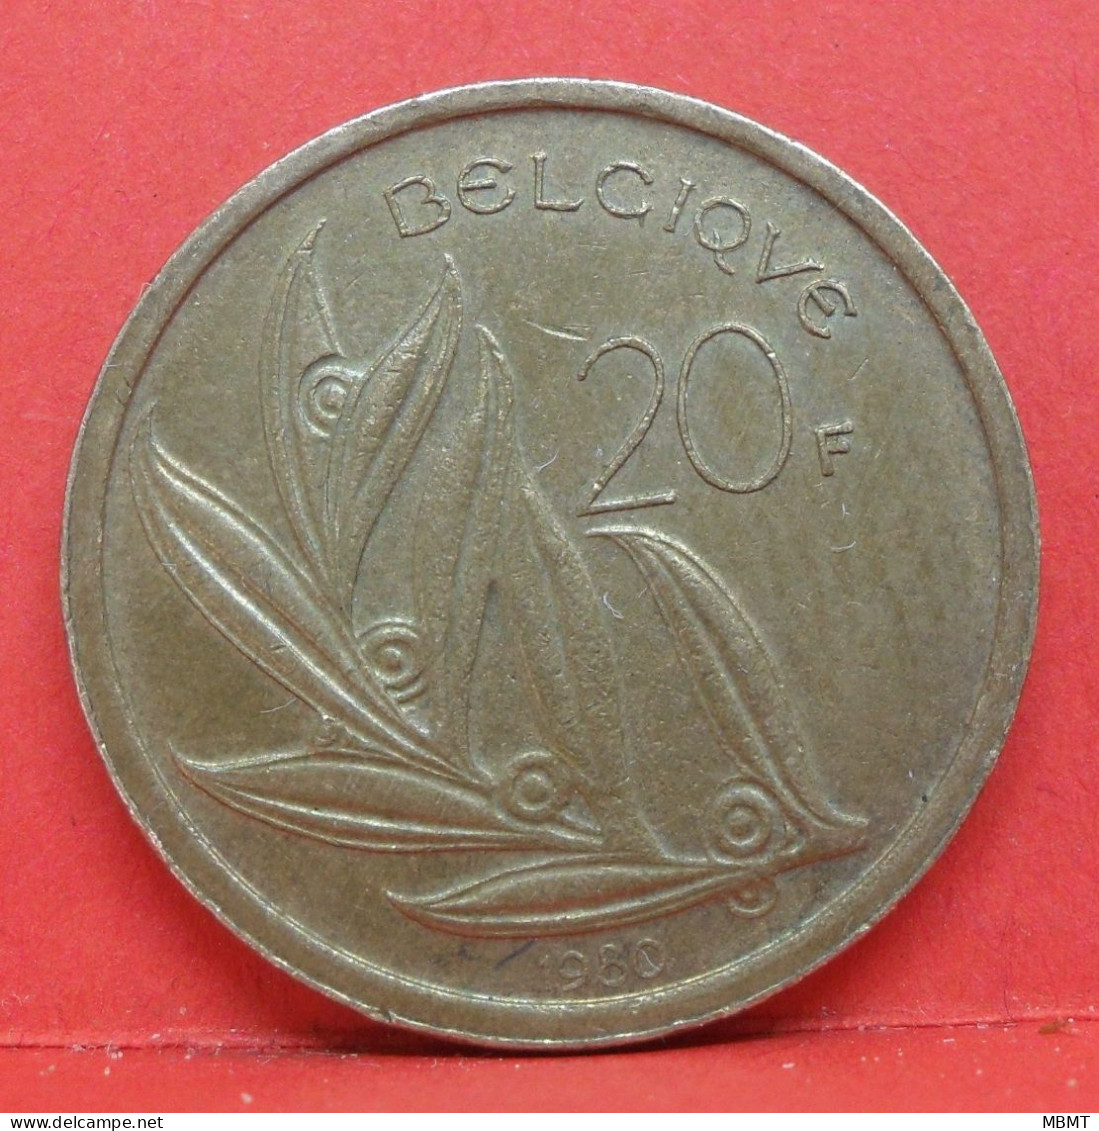 20 Francs 1980 - TTB - Pièce Monnaie Belgique - Article N°1843 - 20 Francs